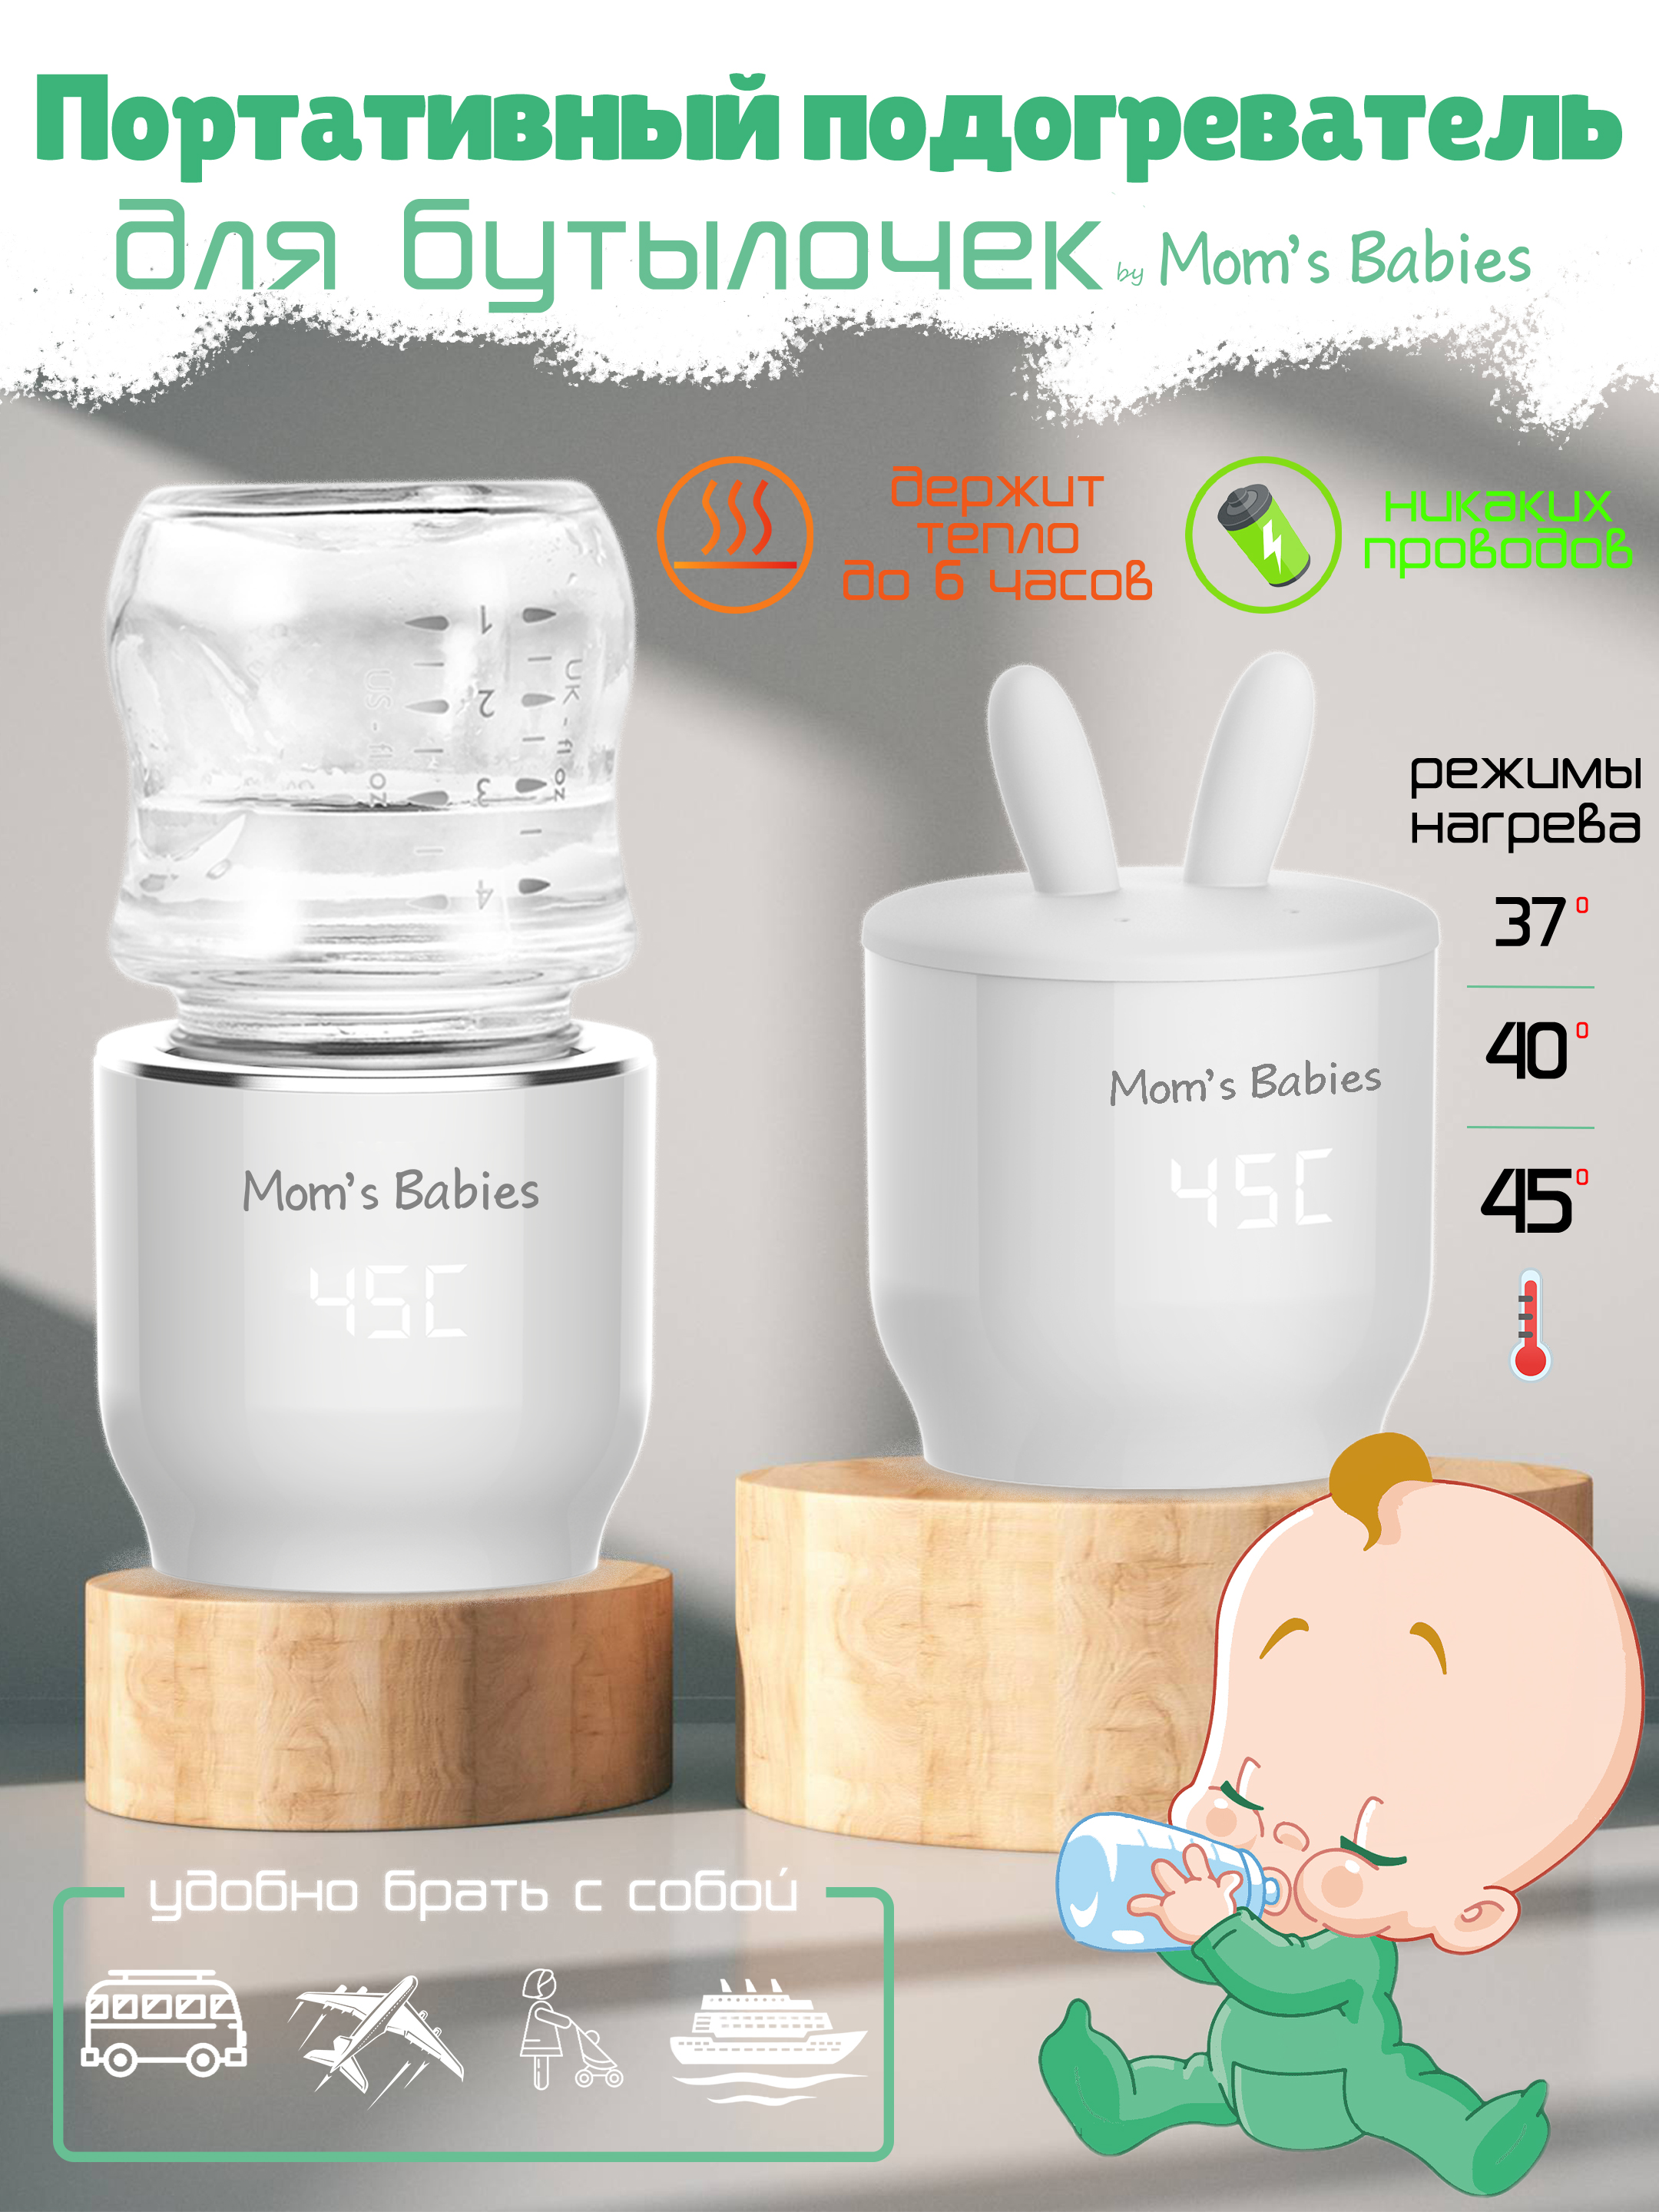 Портативный подогреватель Mom's Babies FS01 для бутылочек и детского питания белый портативный электронный многоцелевой отпугиватель nitecore emr40 от комаров и мошек